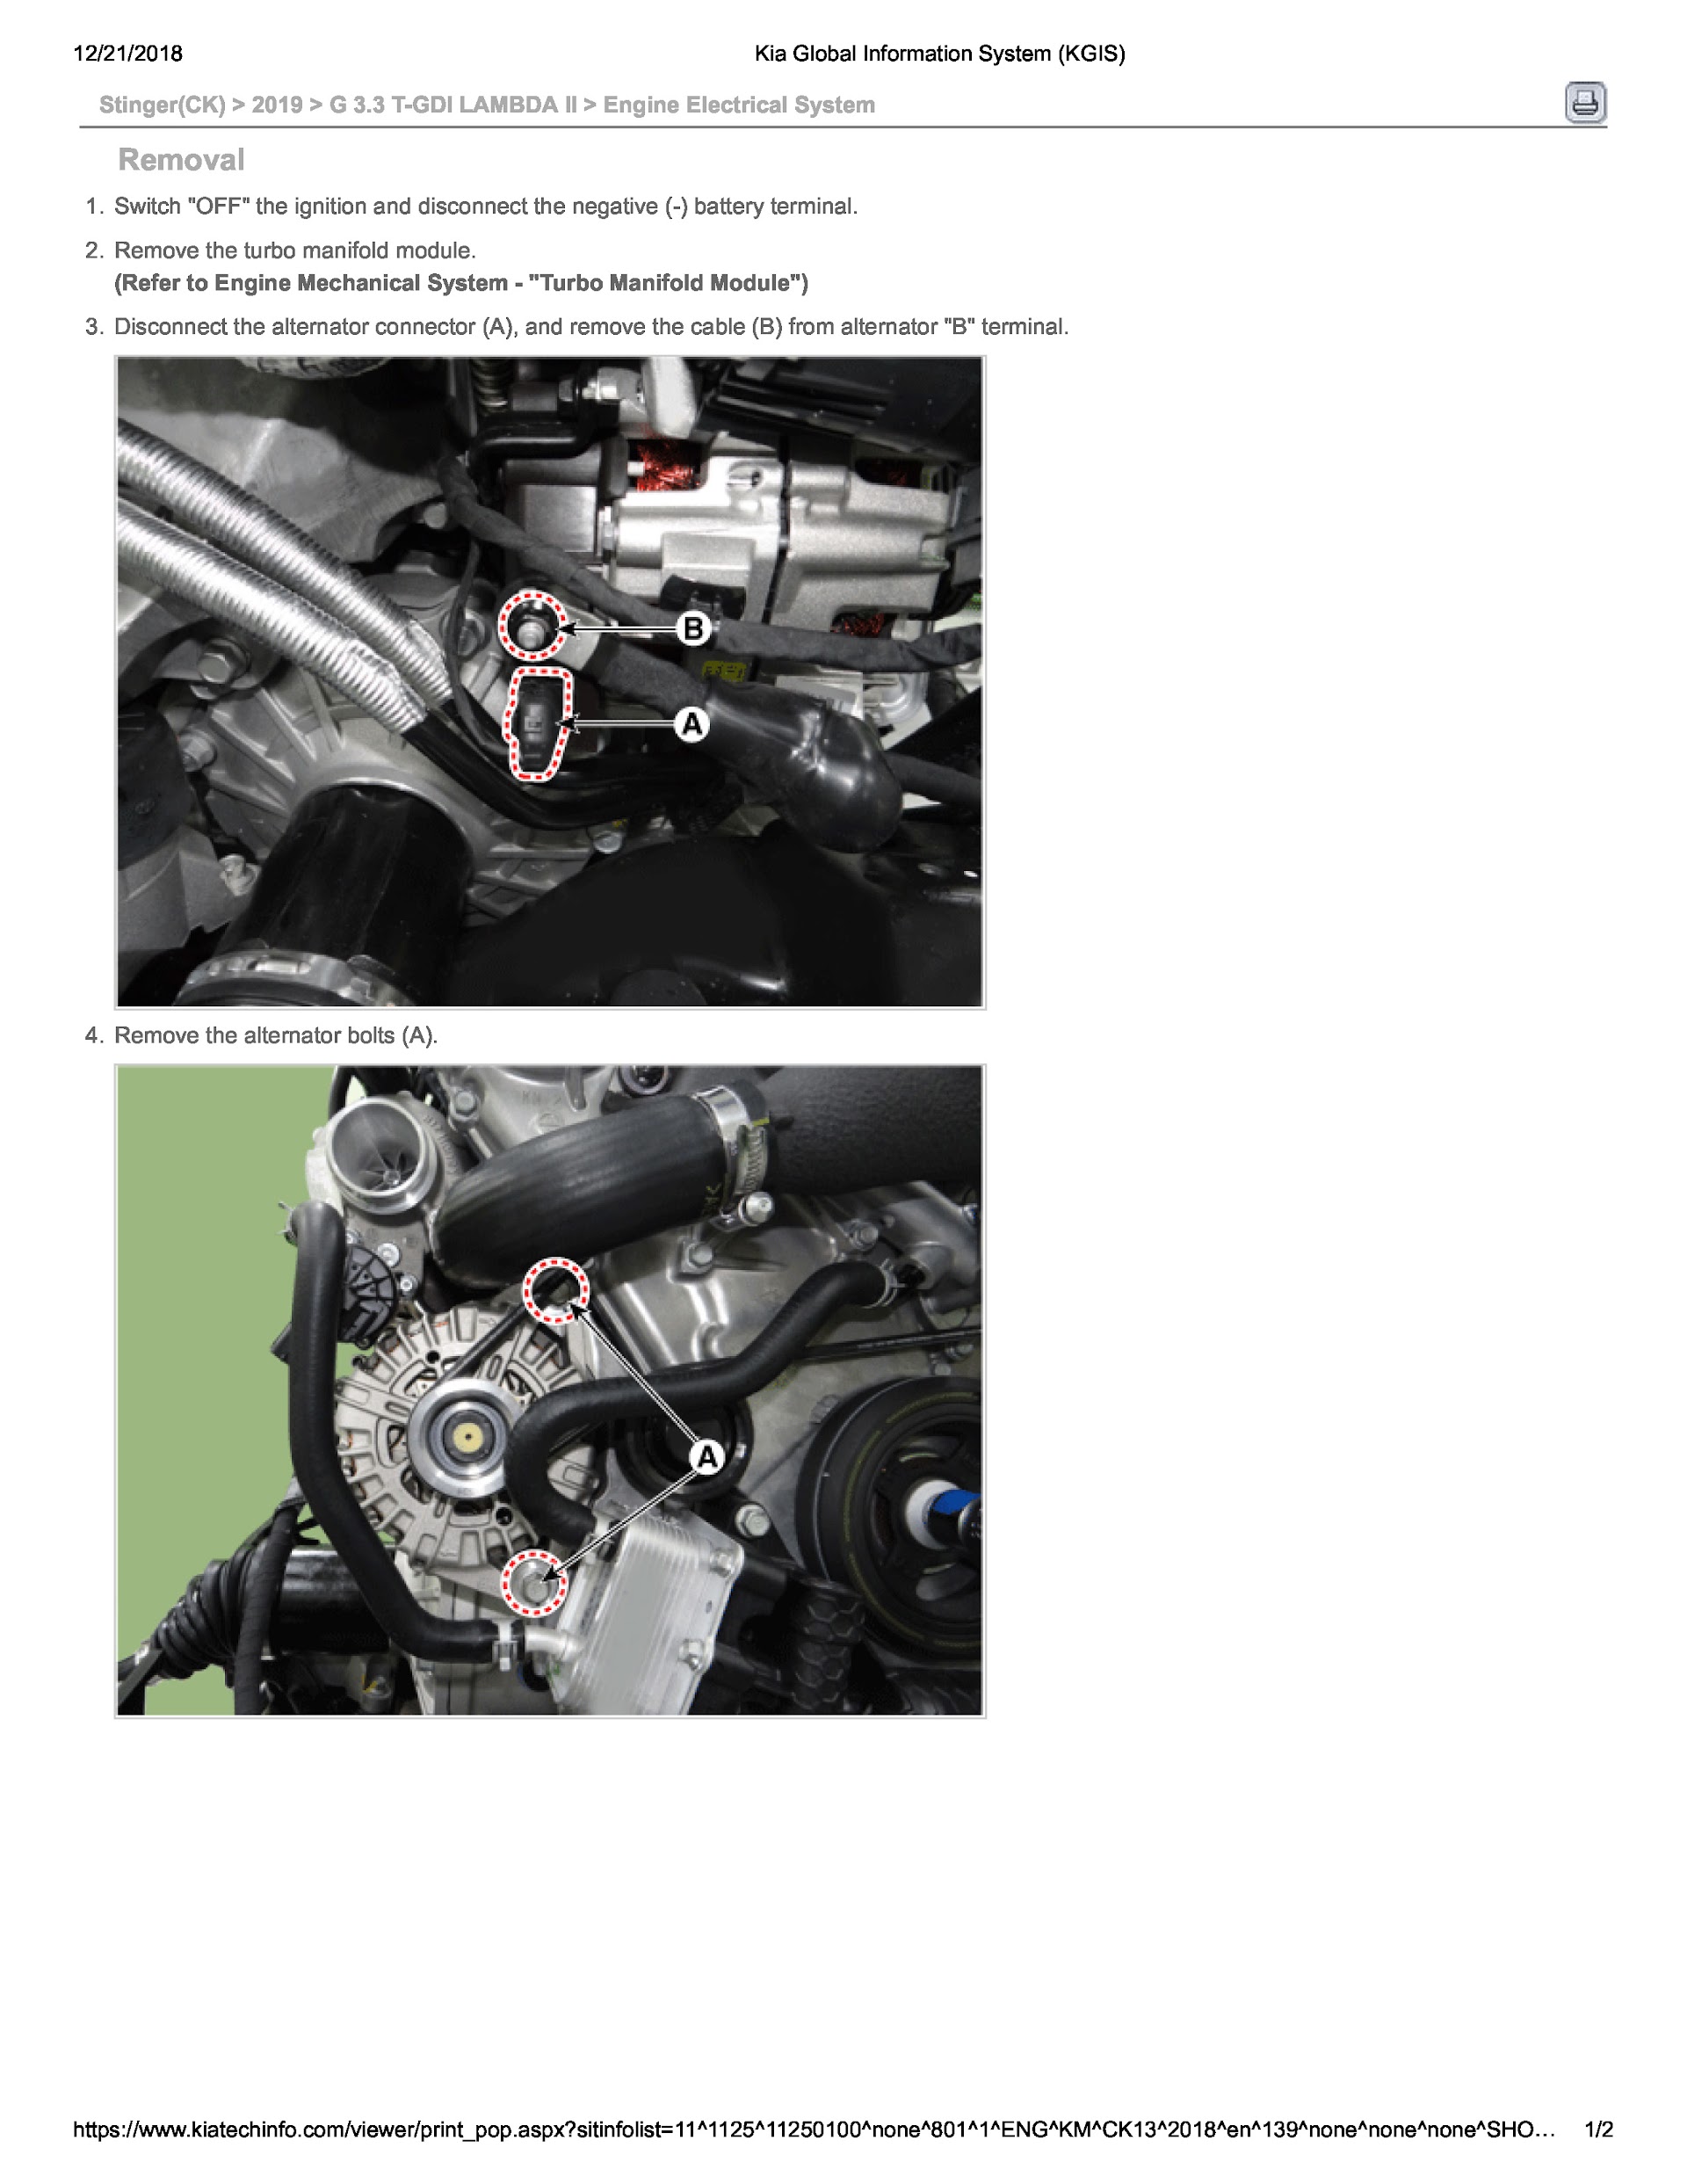 2019 Kia Stinger Repair Manual, Engine Removal